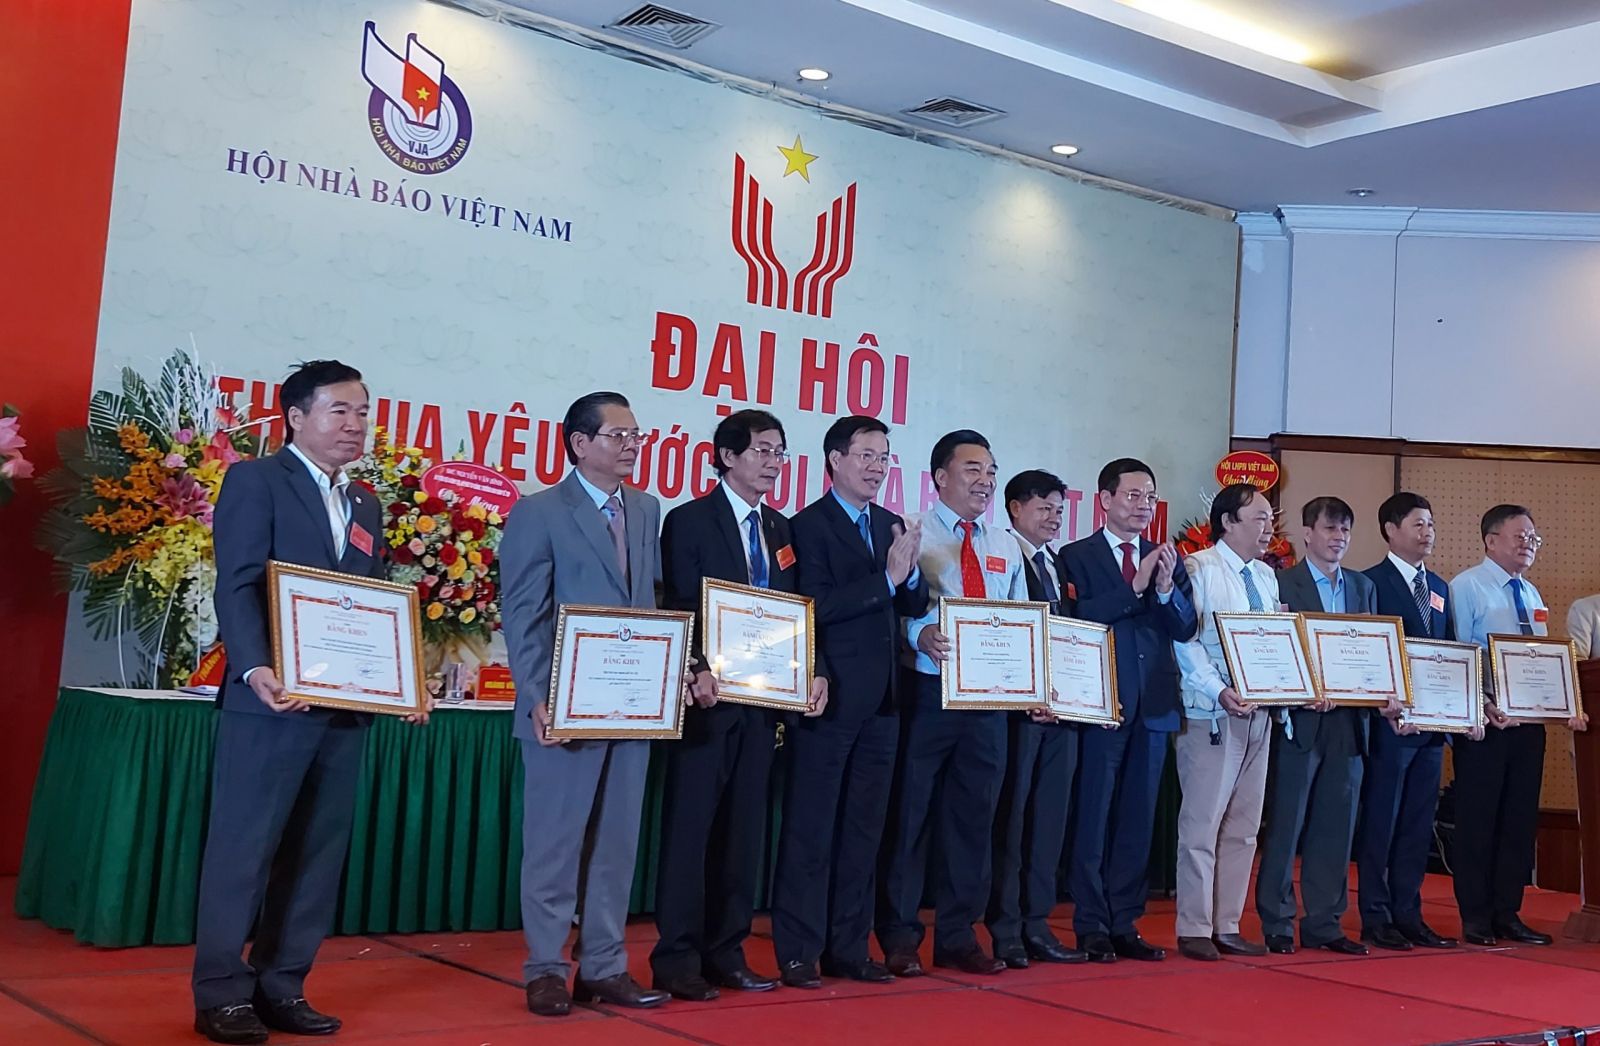 Các tập thể, cá nhân nhận bằng khen của Hội Nhà báo Việt Nam vì có thành tích xuất sắc trong phong trào thi đua yêu nước giai đoạn 2015-2020